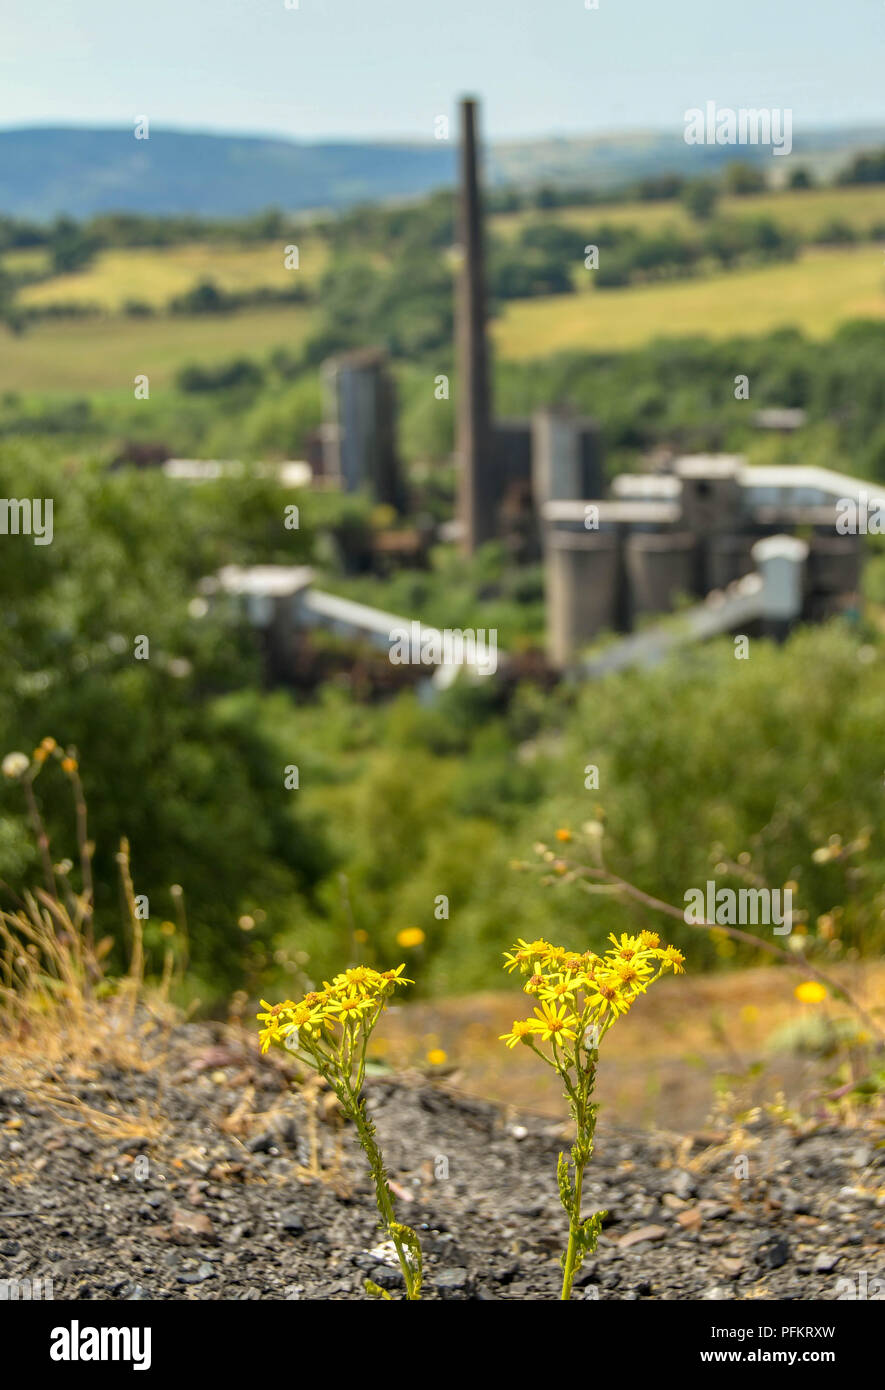 Piccolo fiore giallo che cresce su un bottino punta con le costruzioni abbandonate della ex Cwm colliery e forni a coke sfocati in background Foto Stock